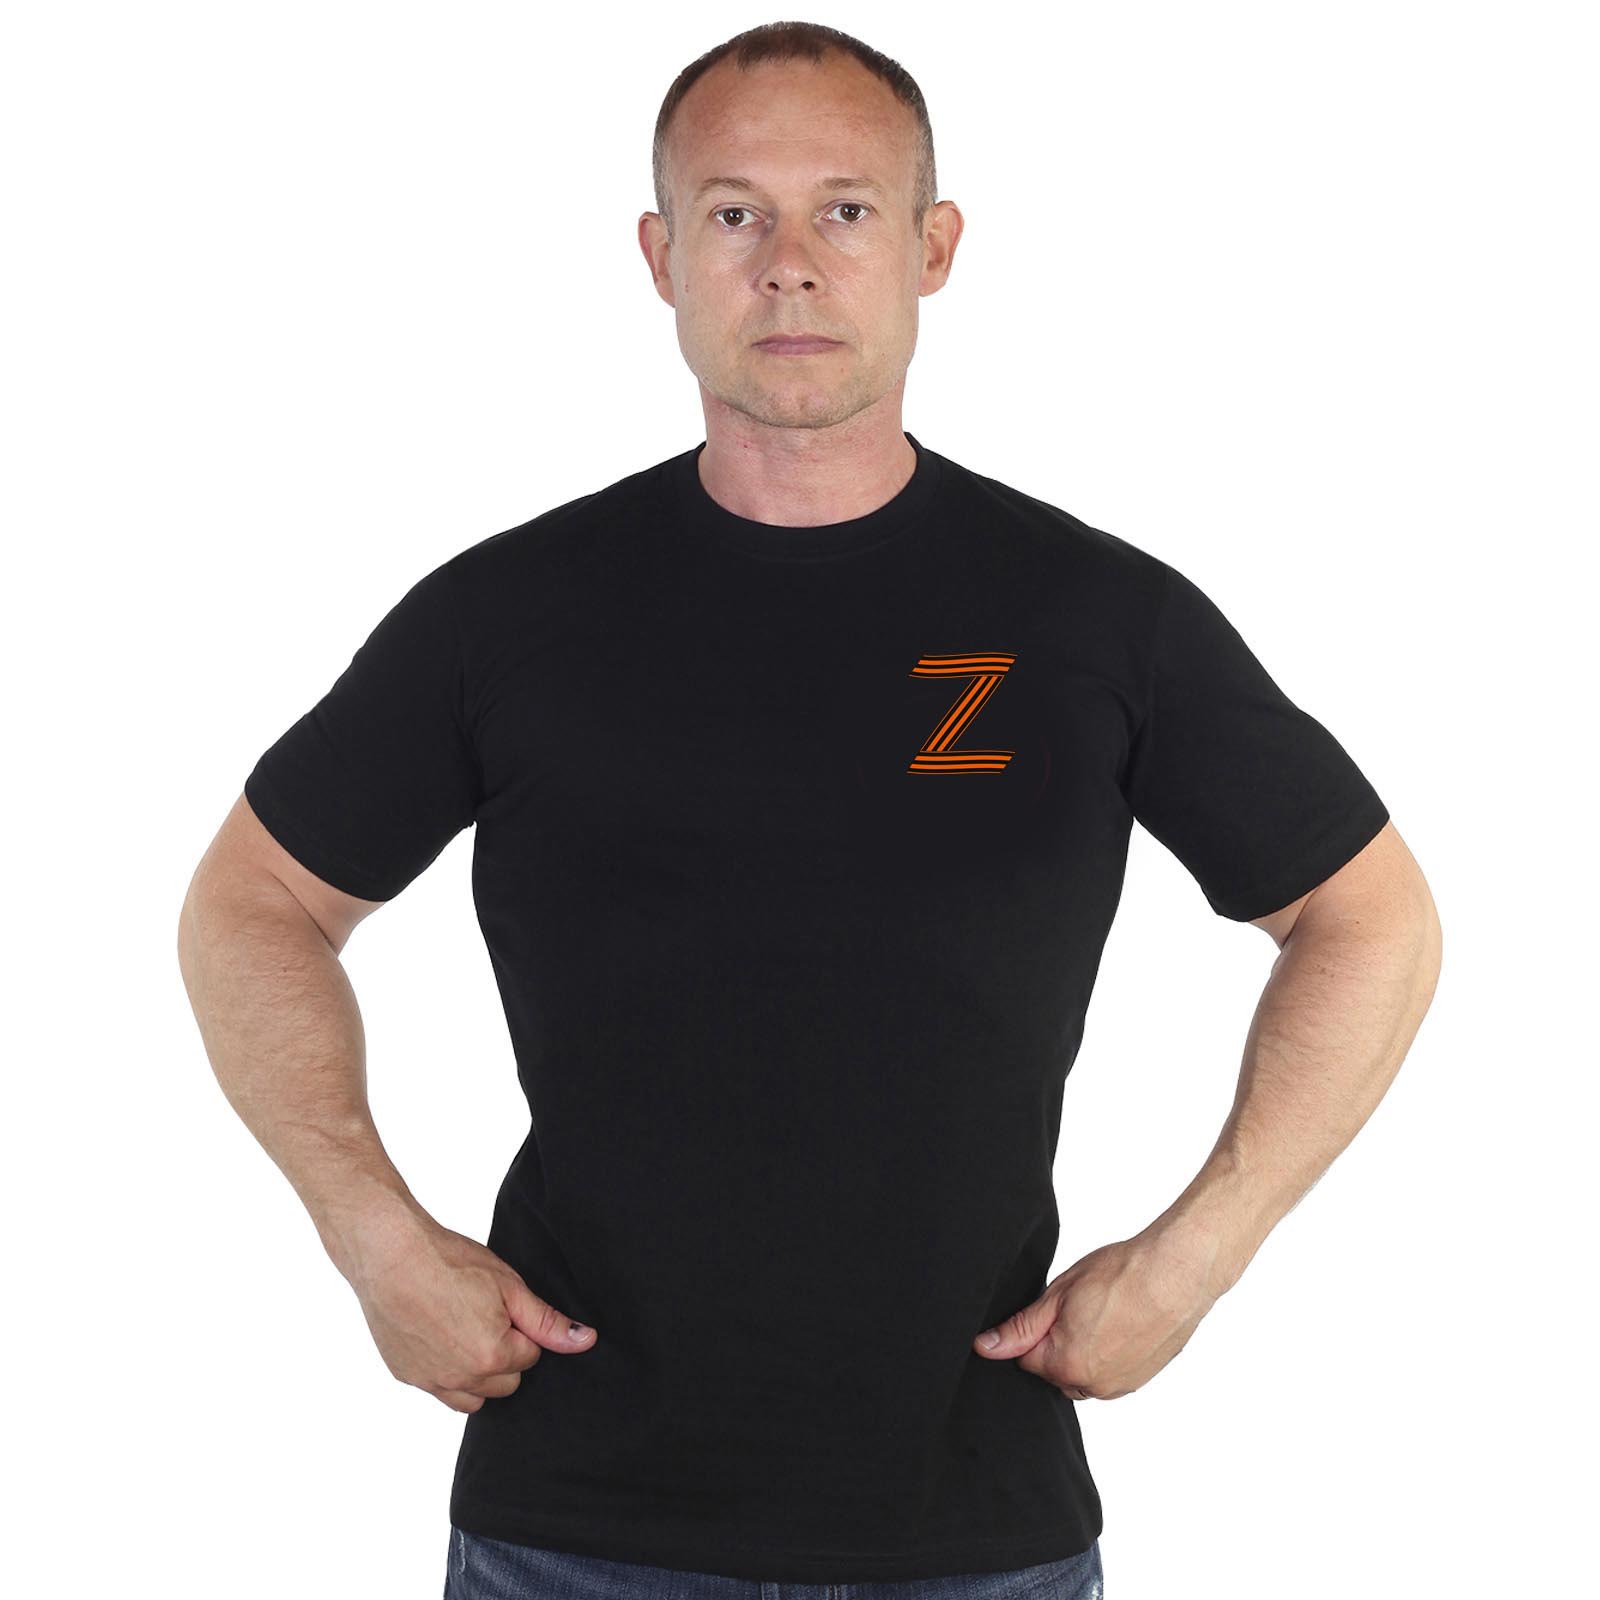 Купить в интернет магазине футболку Z